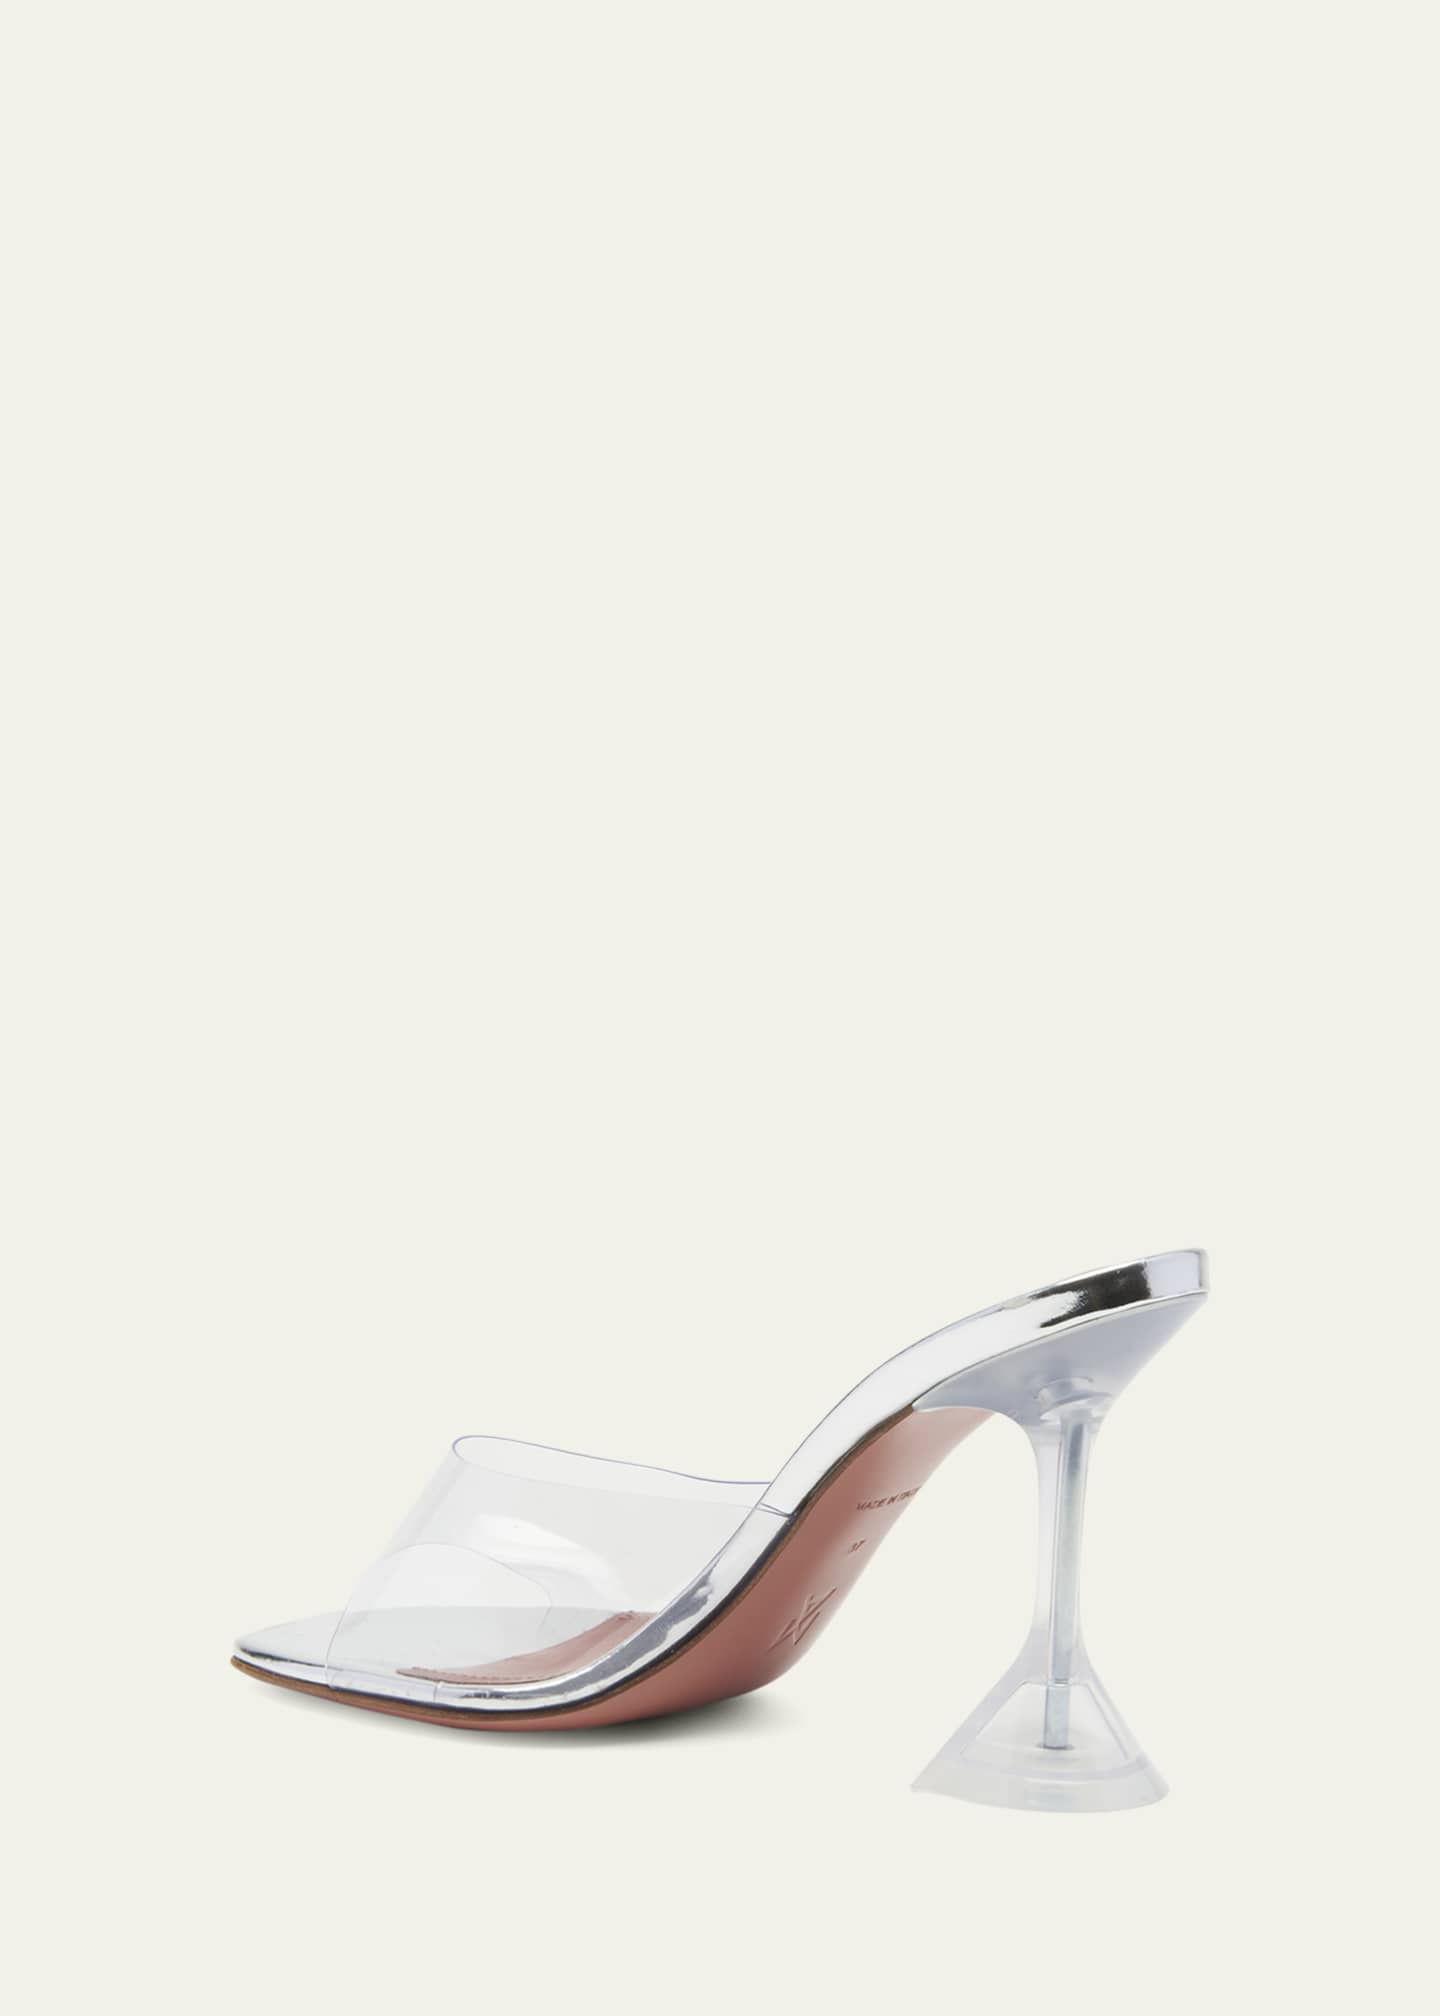 Amina Muaddi Lupita Glass Slide Sandals Image 4 of 5